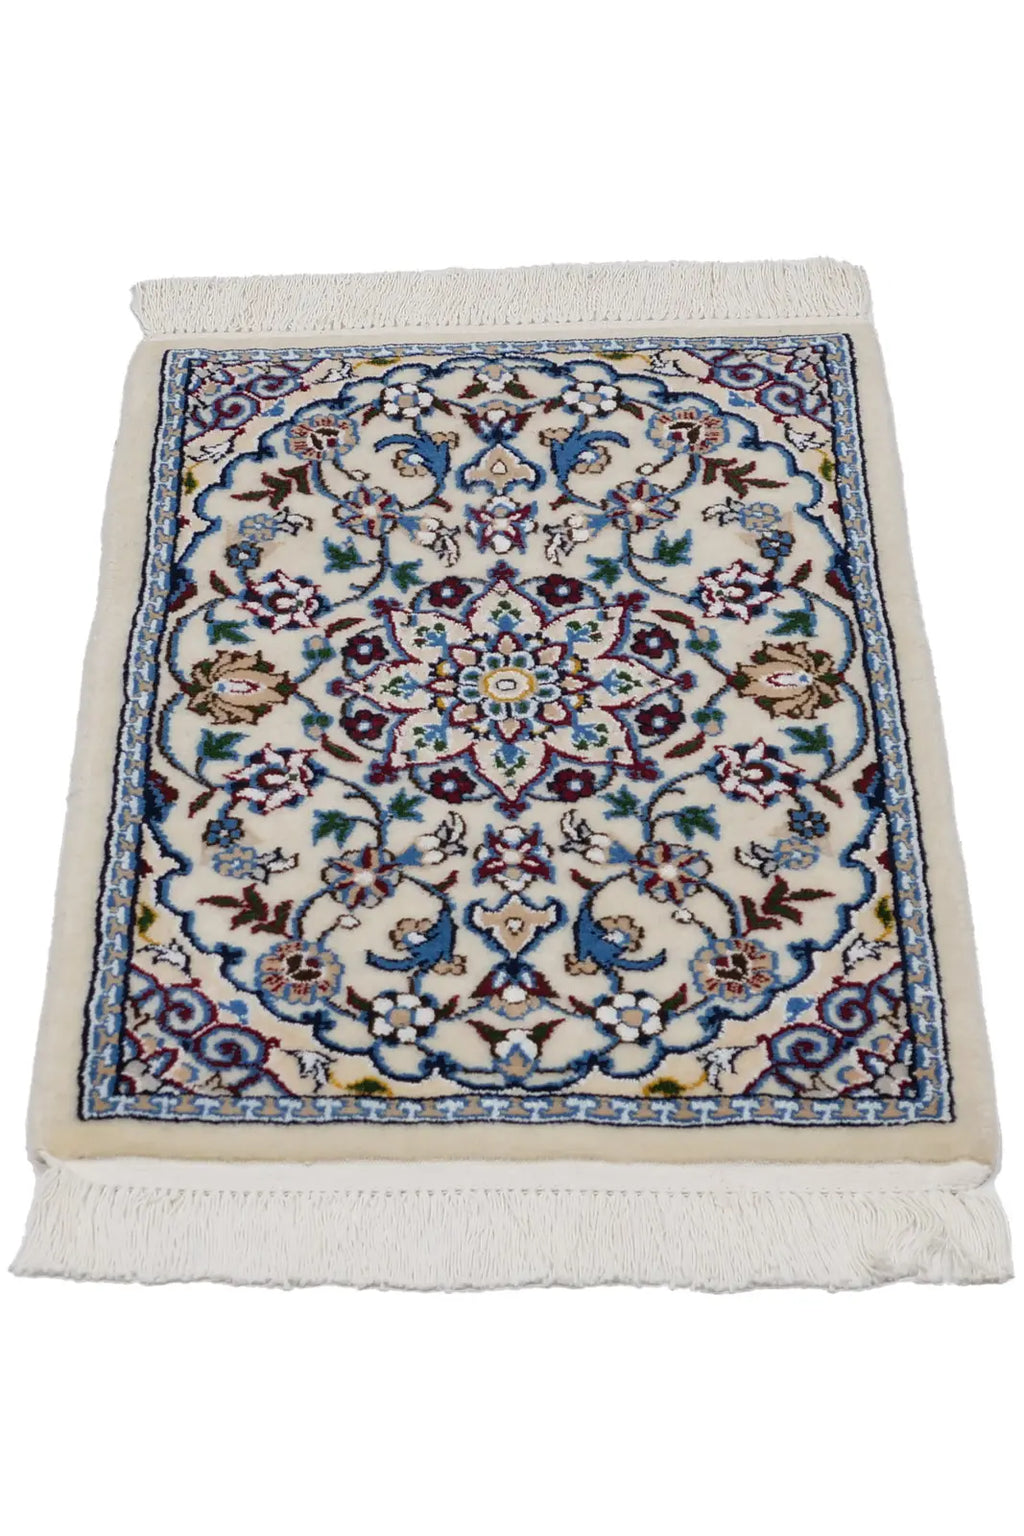 使い勝手の良い 手織りシルク入り高級ペルシャ絨毯/ナイン産美しい色柄 